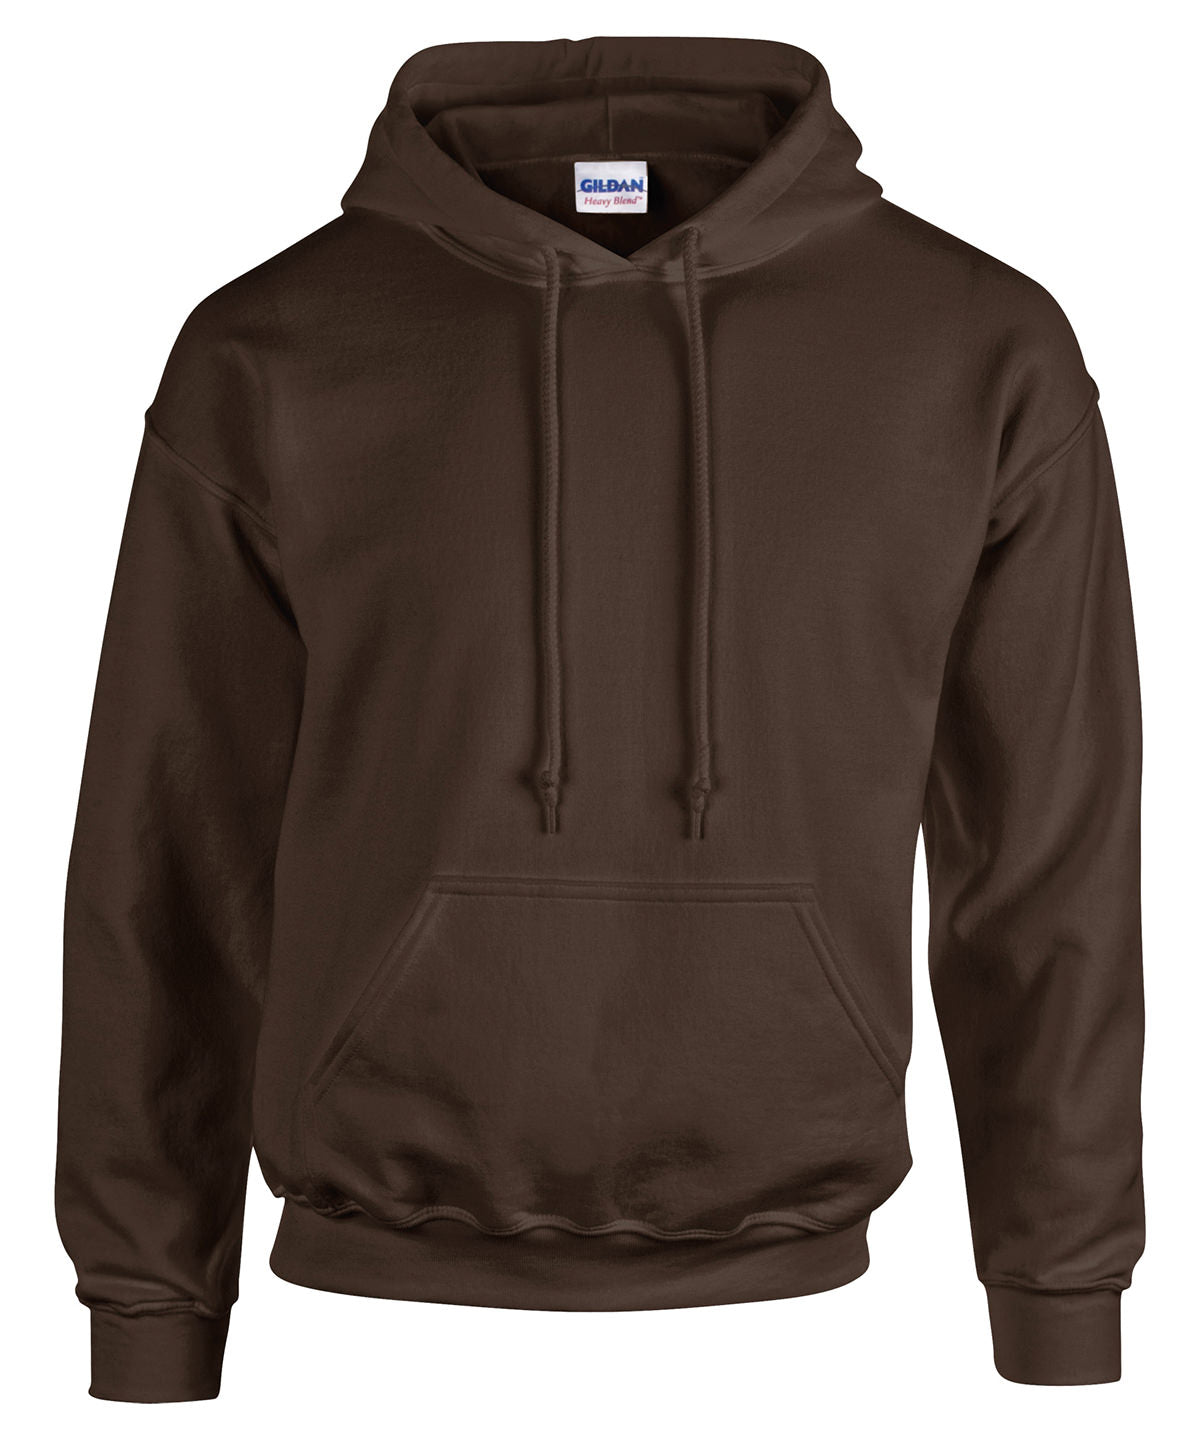 Personalised Hoodies - Sapphire Gildan Heavy Blend™ hooded sweatshirt